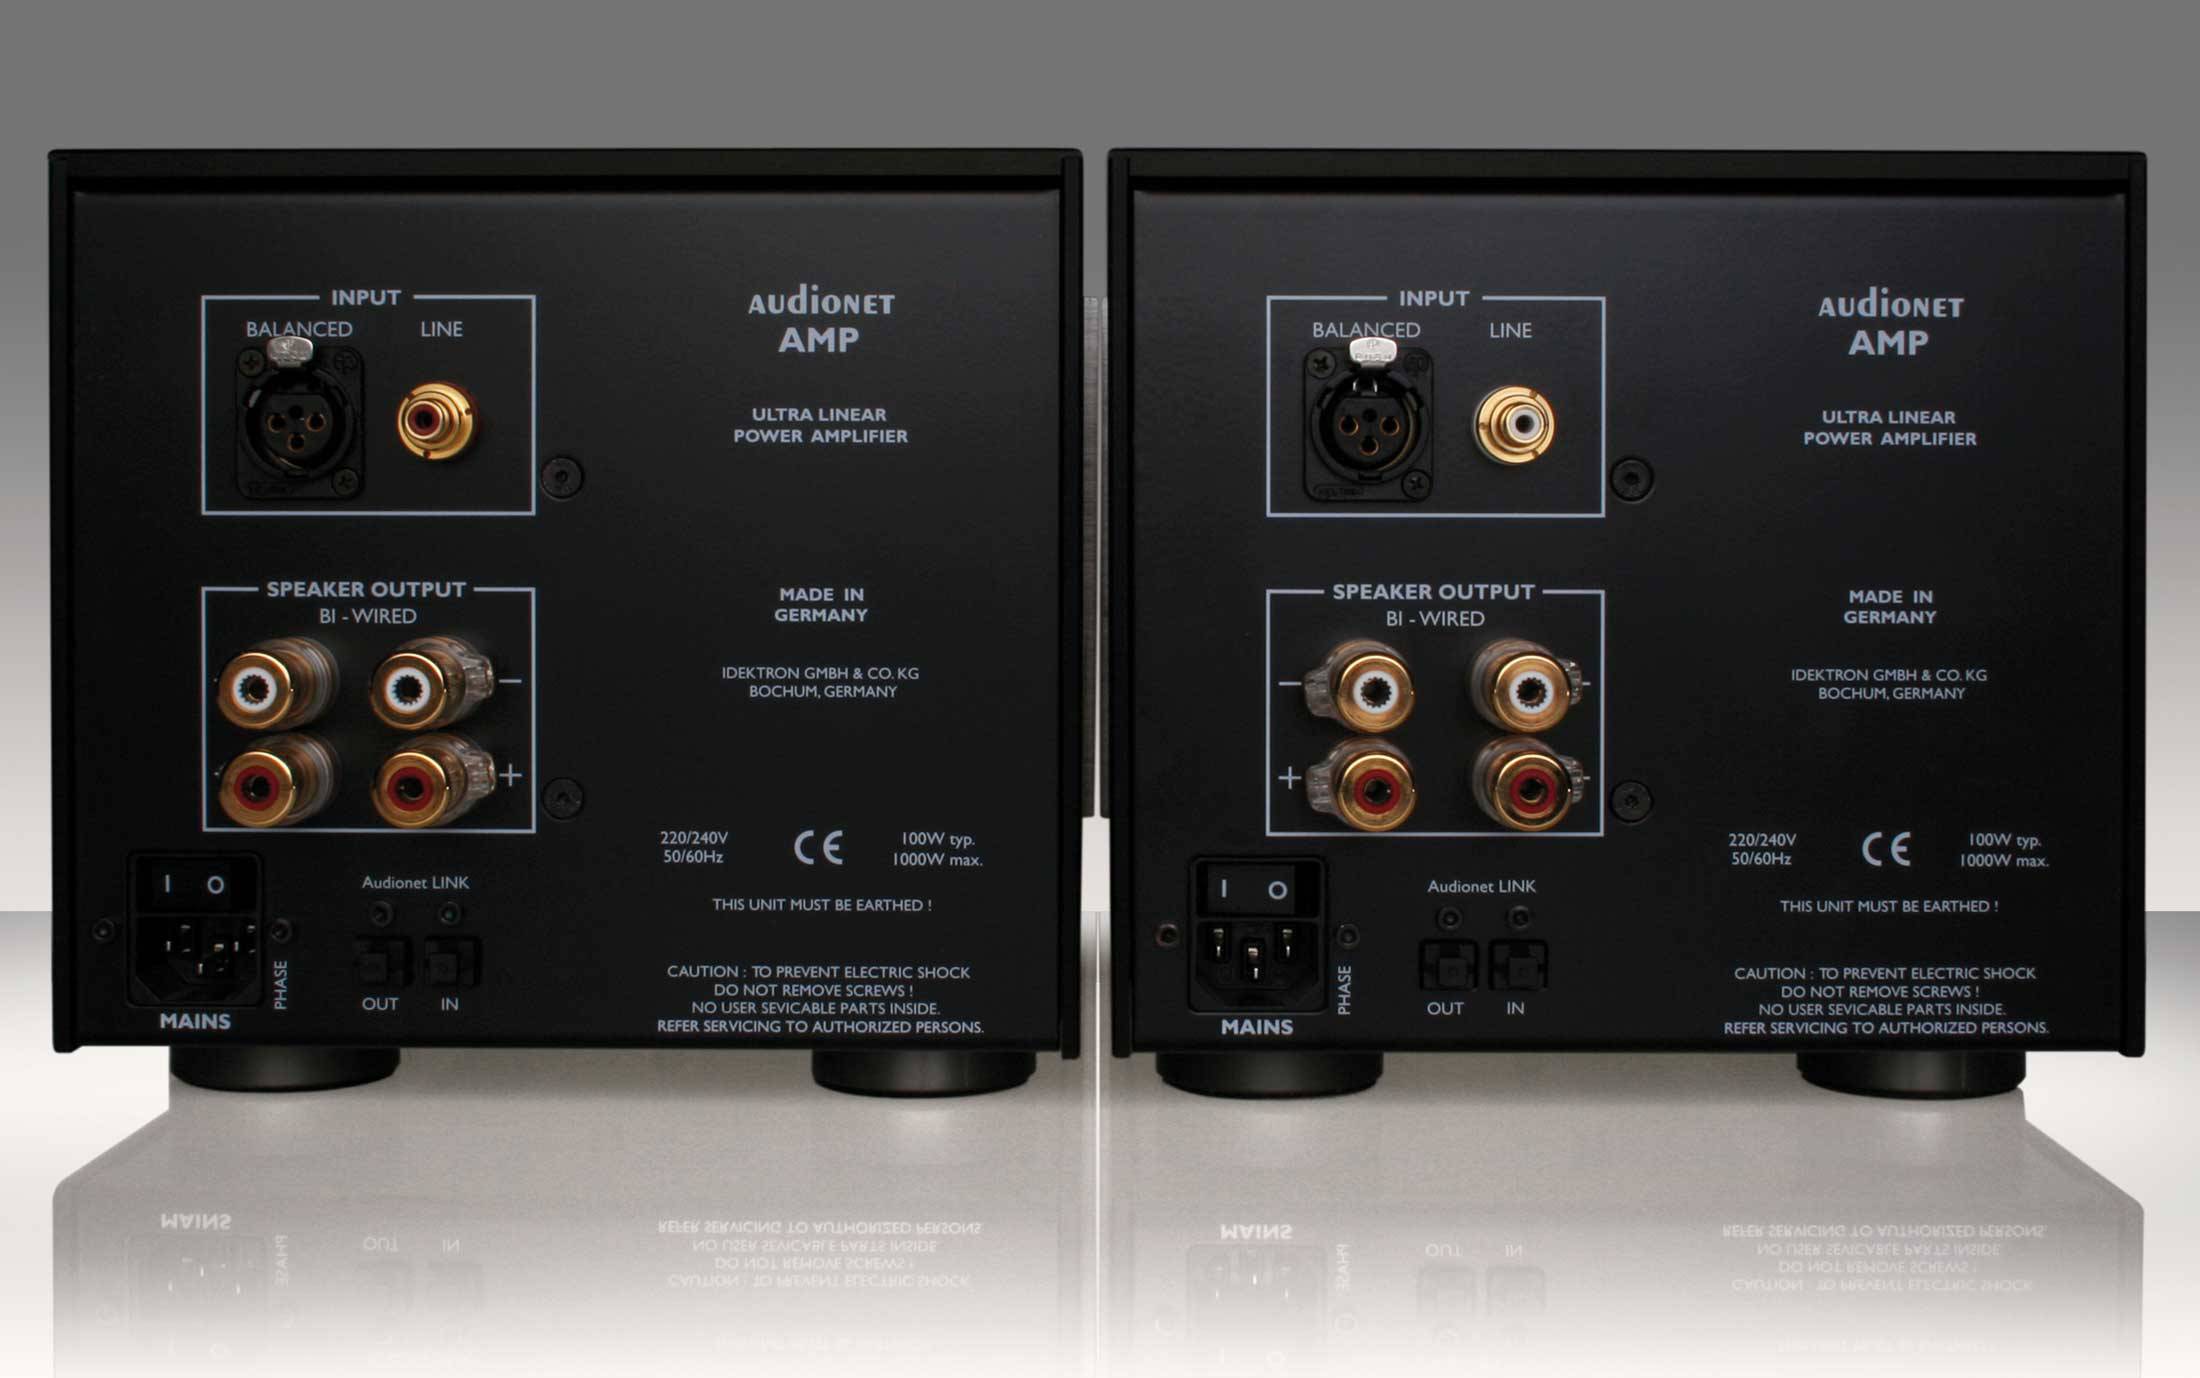 Audionet AMP II MAX